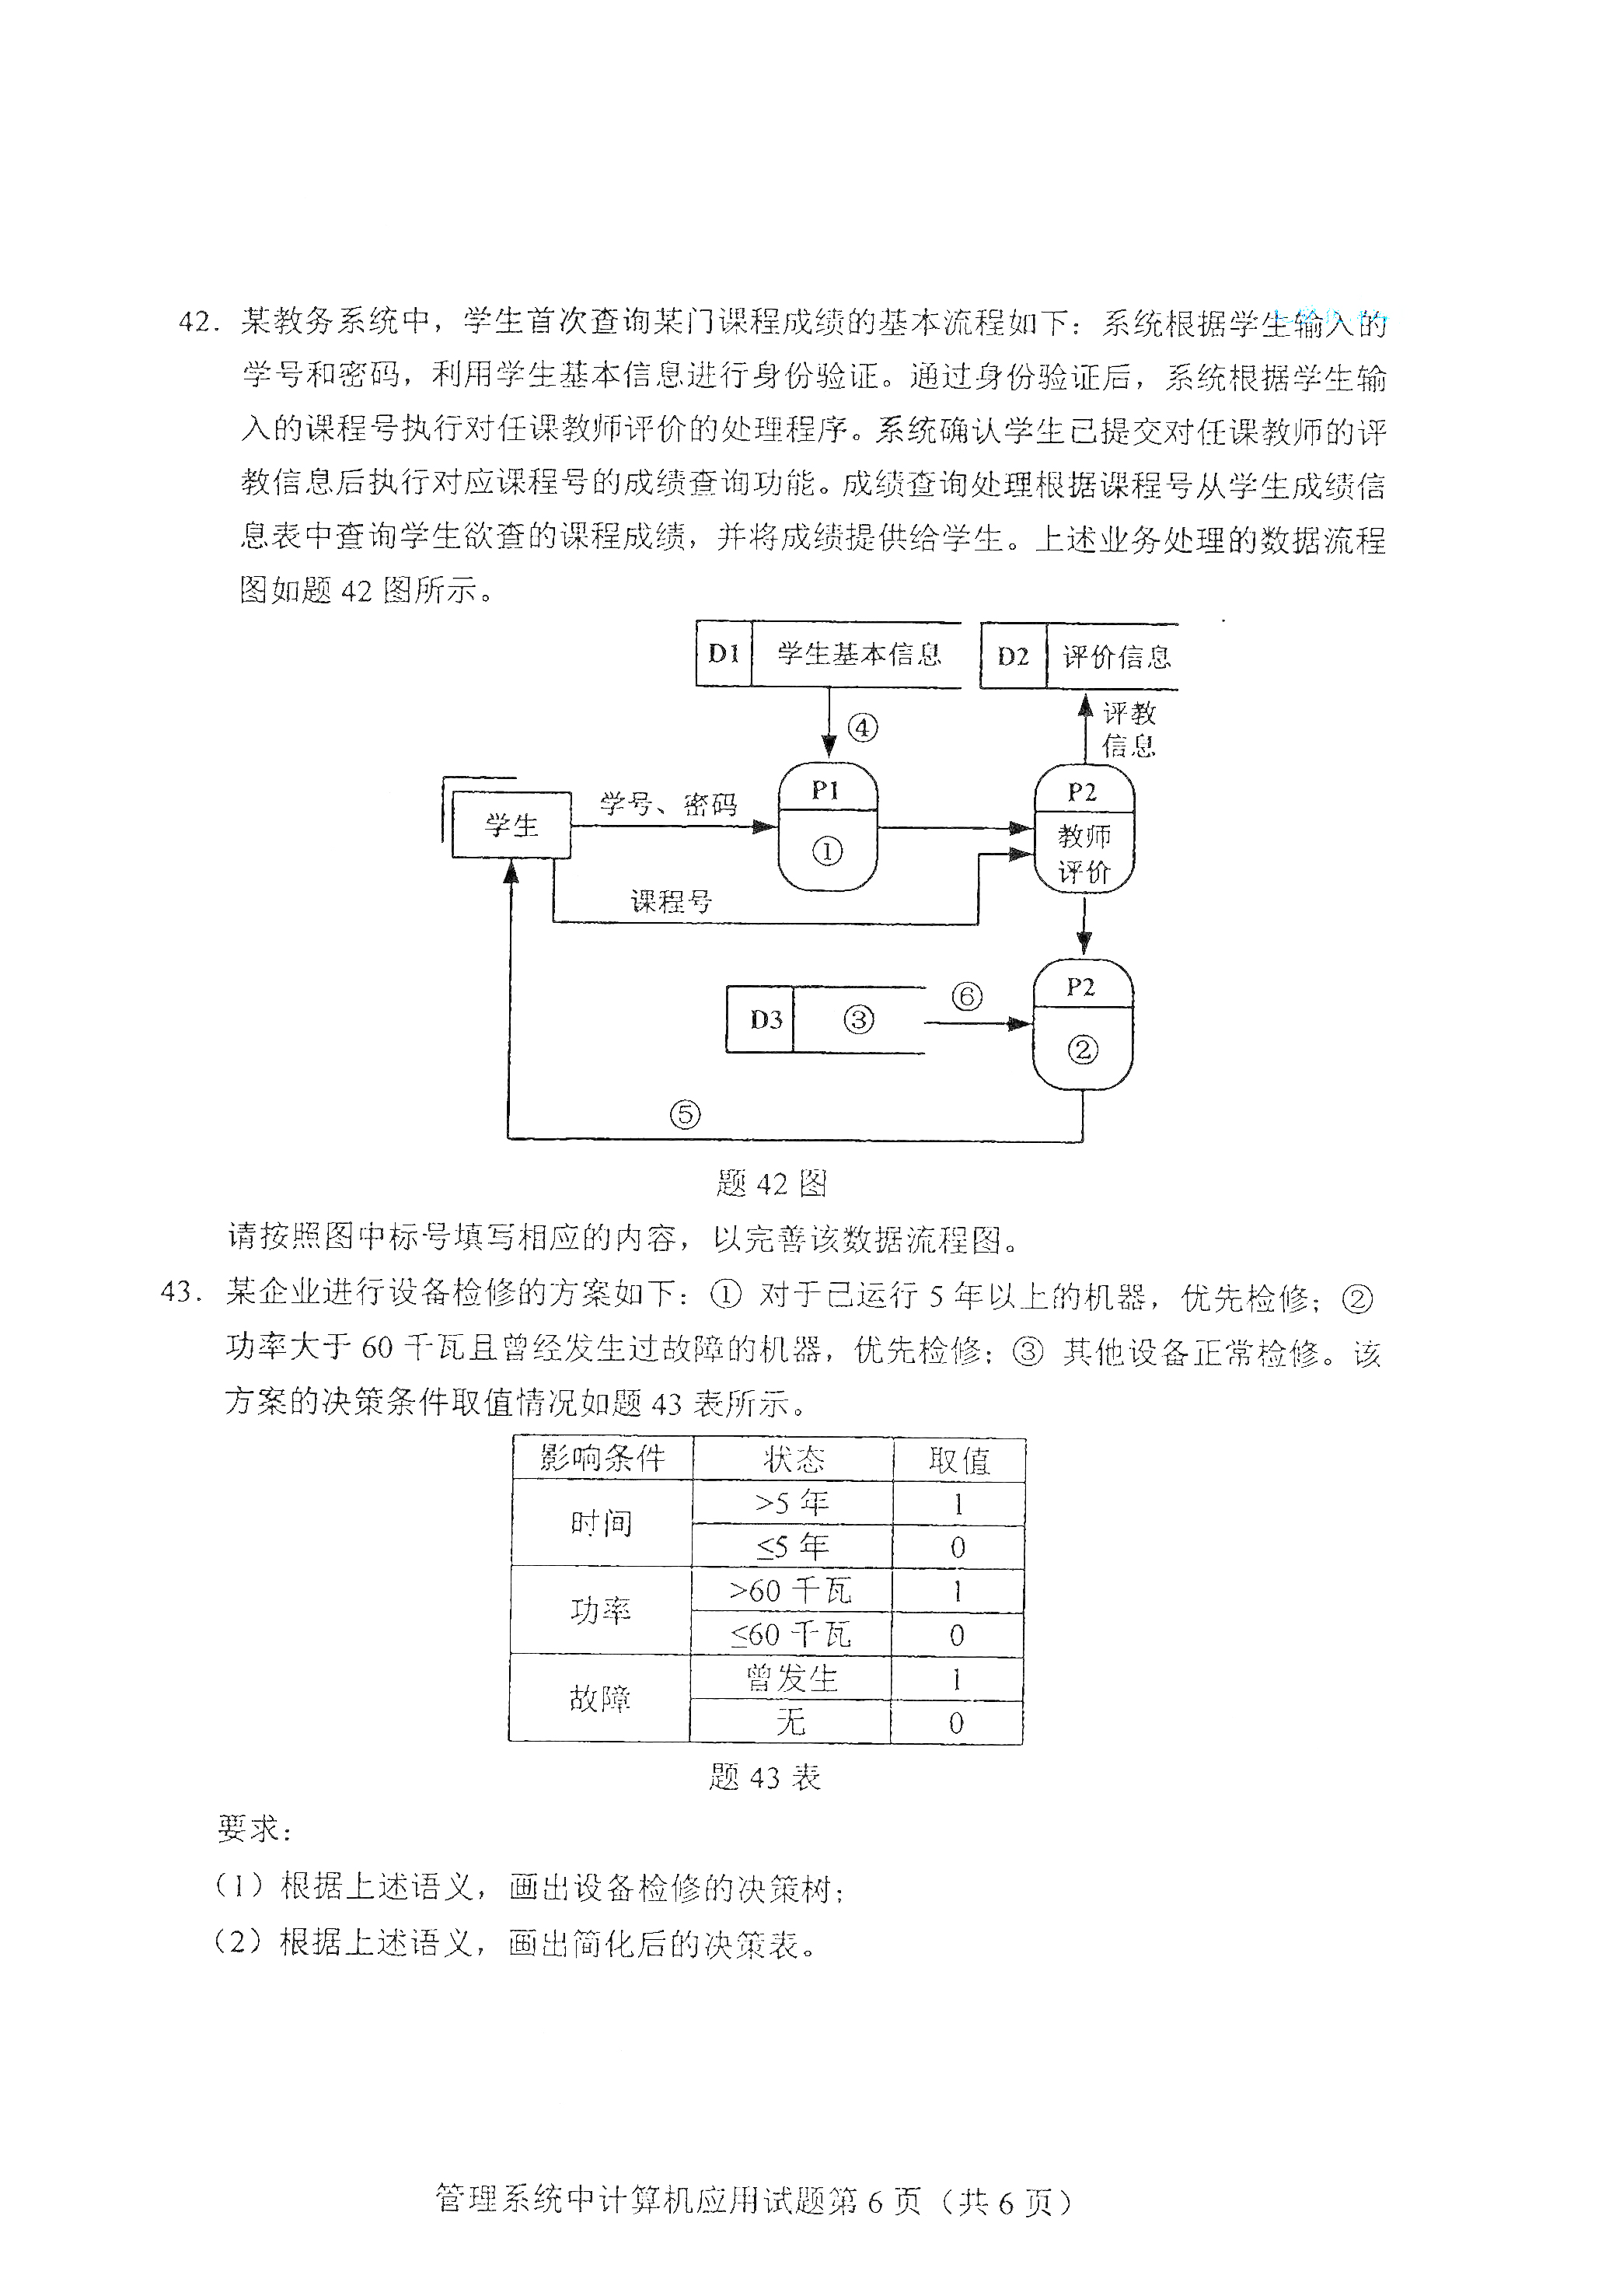 重庆2021年4月自考00051管理系统中计算机应用真题试卷